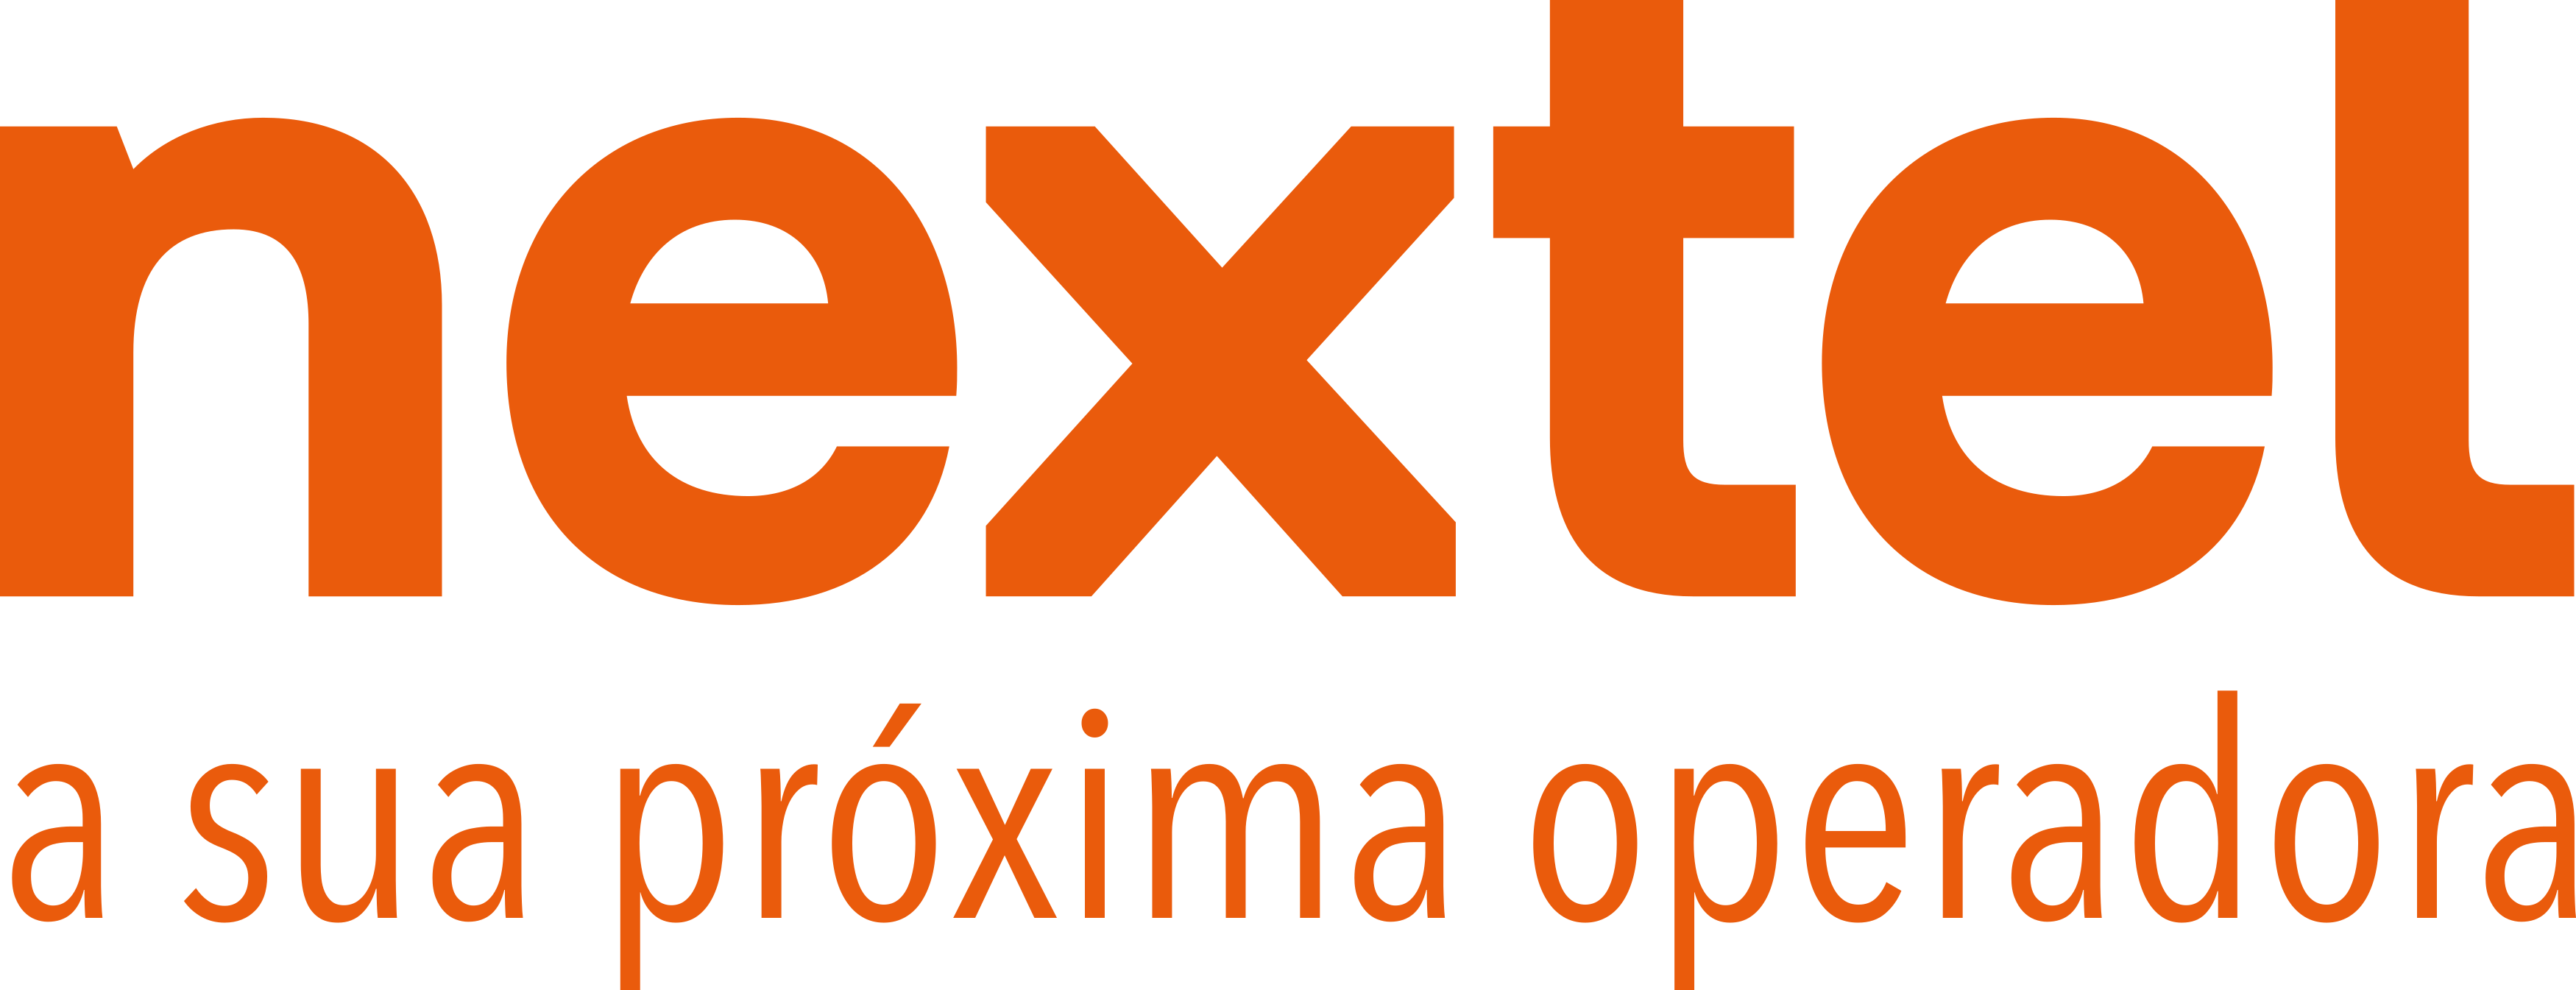 Nextel Logo.